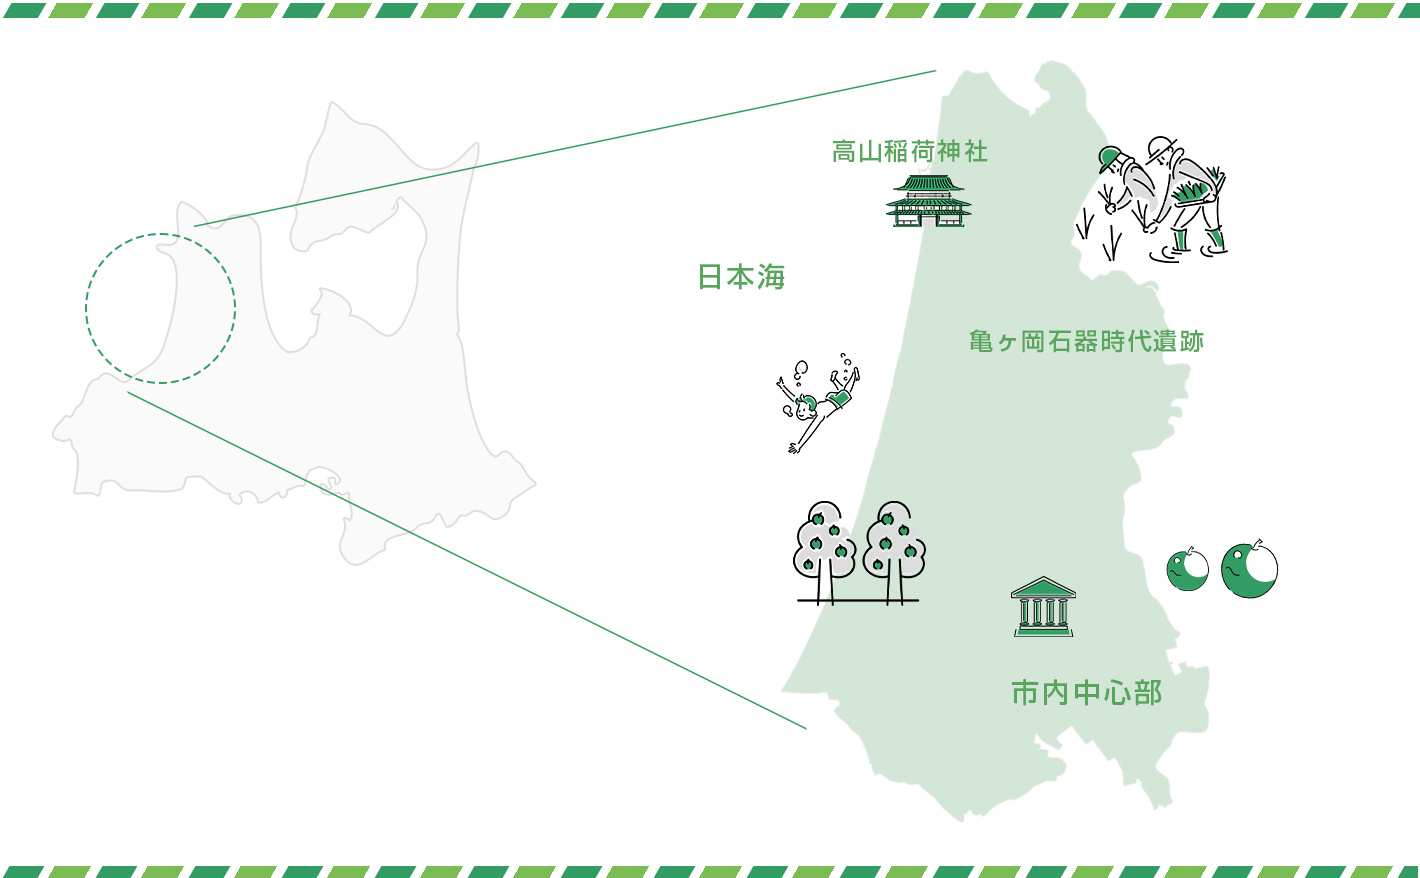 青森県つがる市の位置と名産品・名所を示す地図